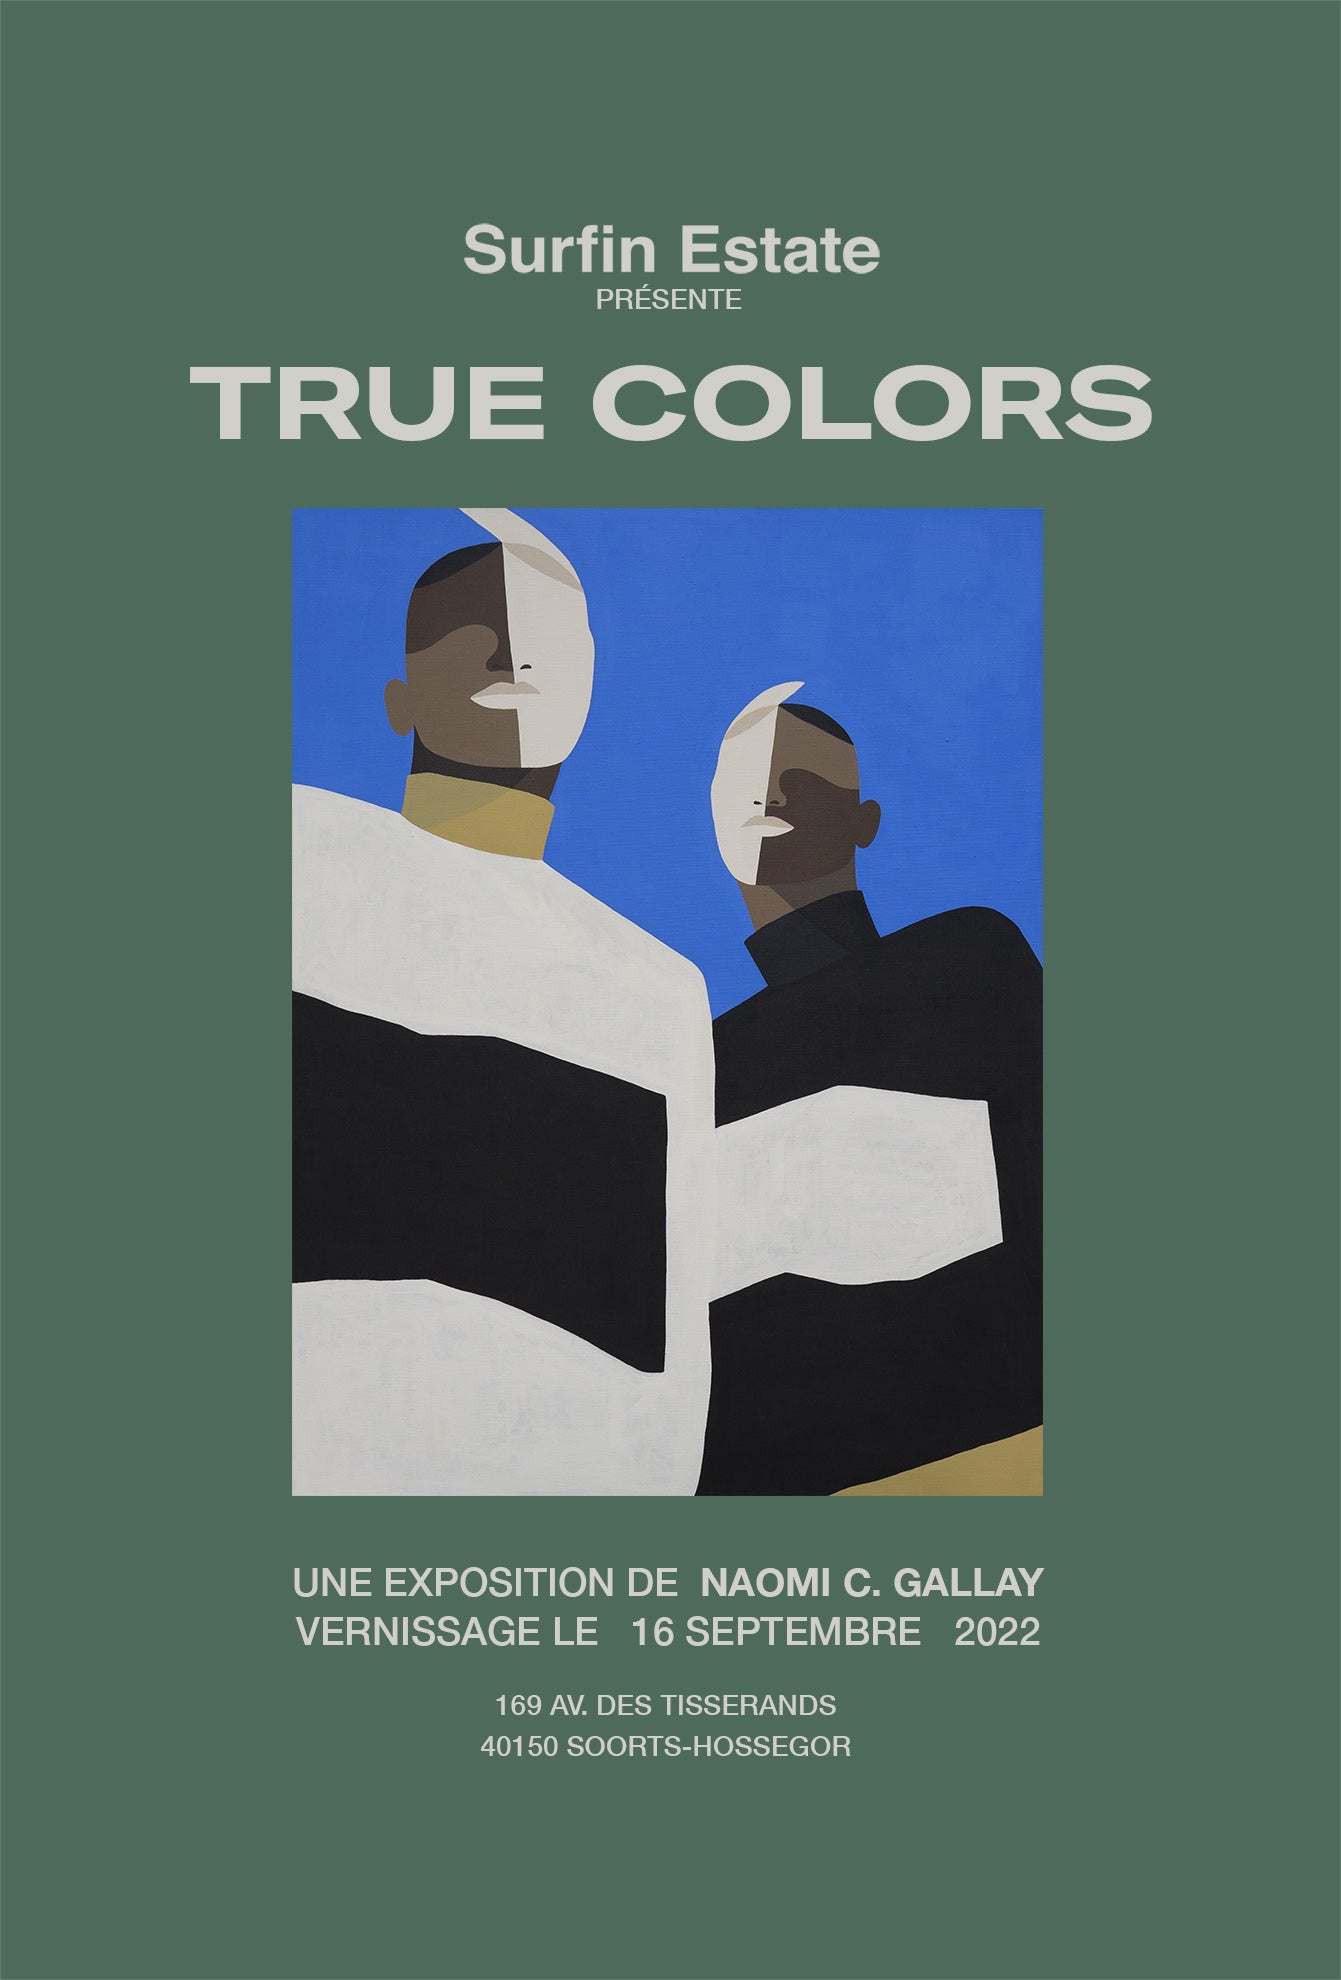 Exposition "TRUE COLORS" de Naomi C. Gallay chez Surfin Estate, Hossegor.